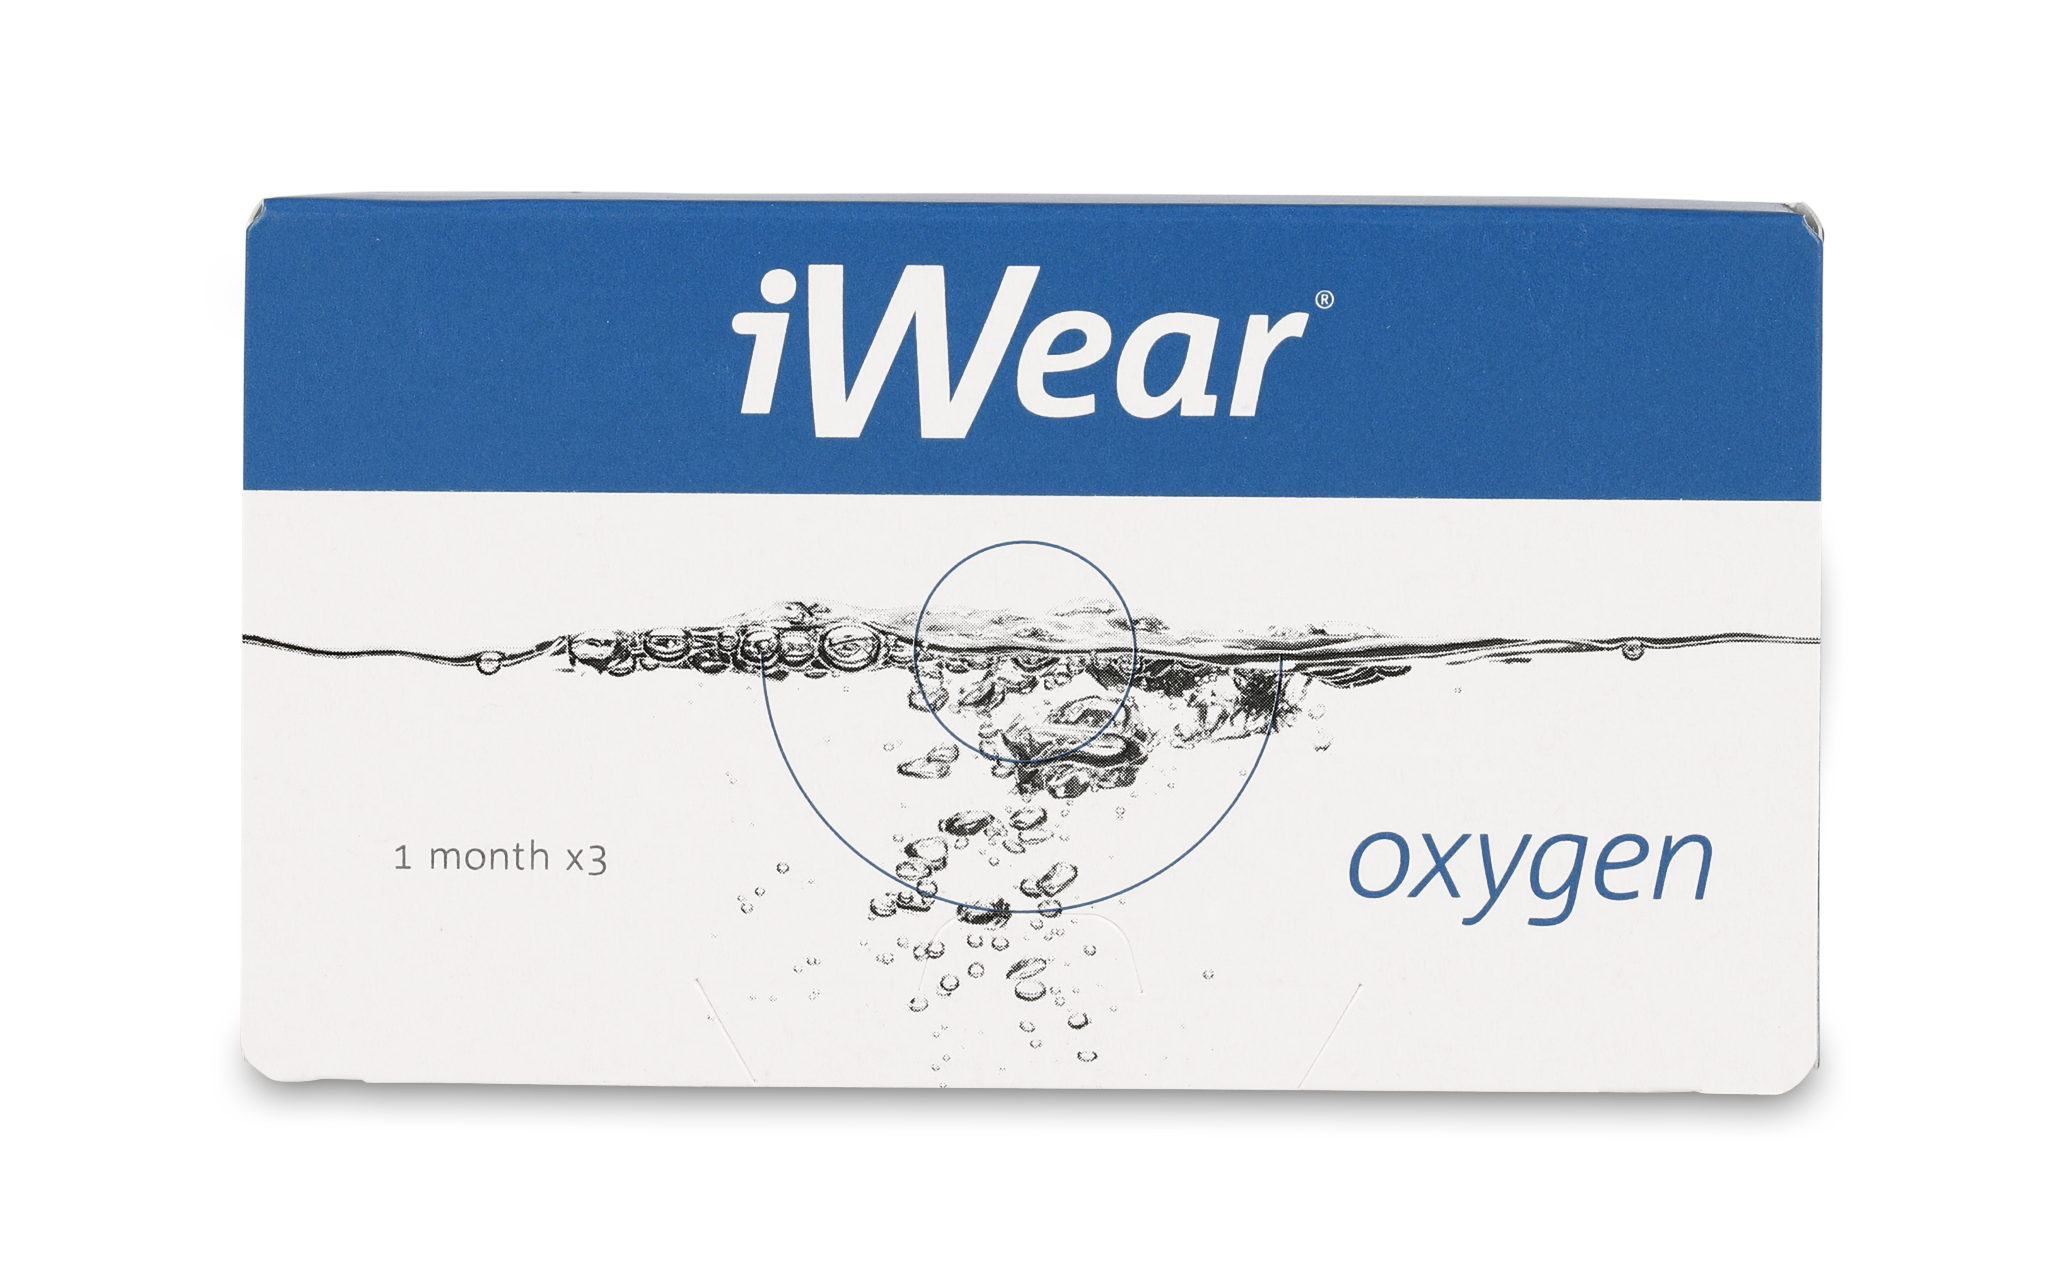 Front iWear iWear oxygen 3 unidades Mensuales 3 lentillas por caja